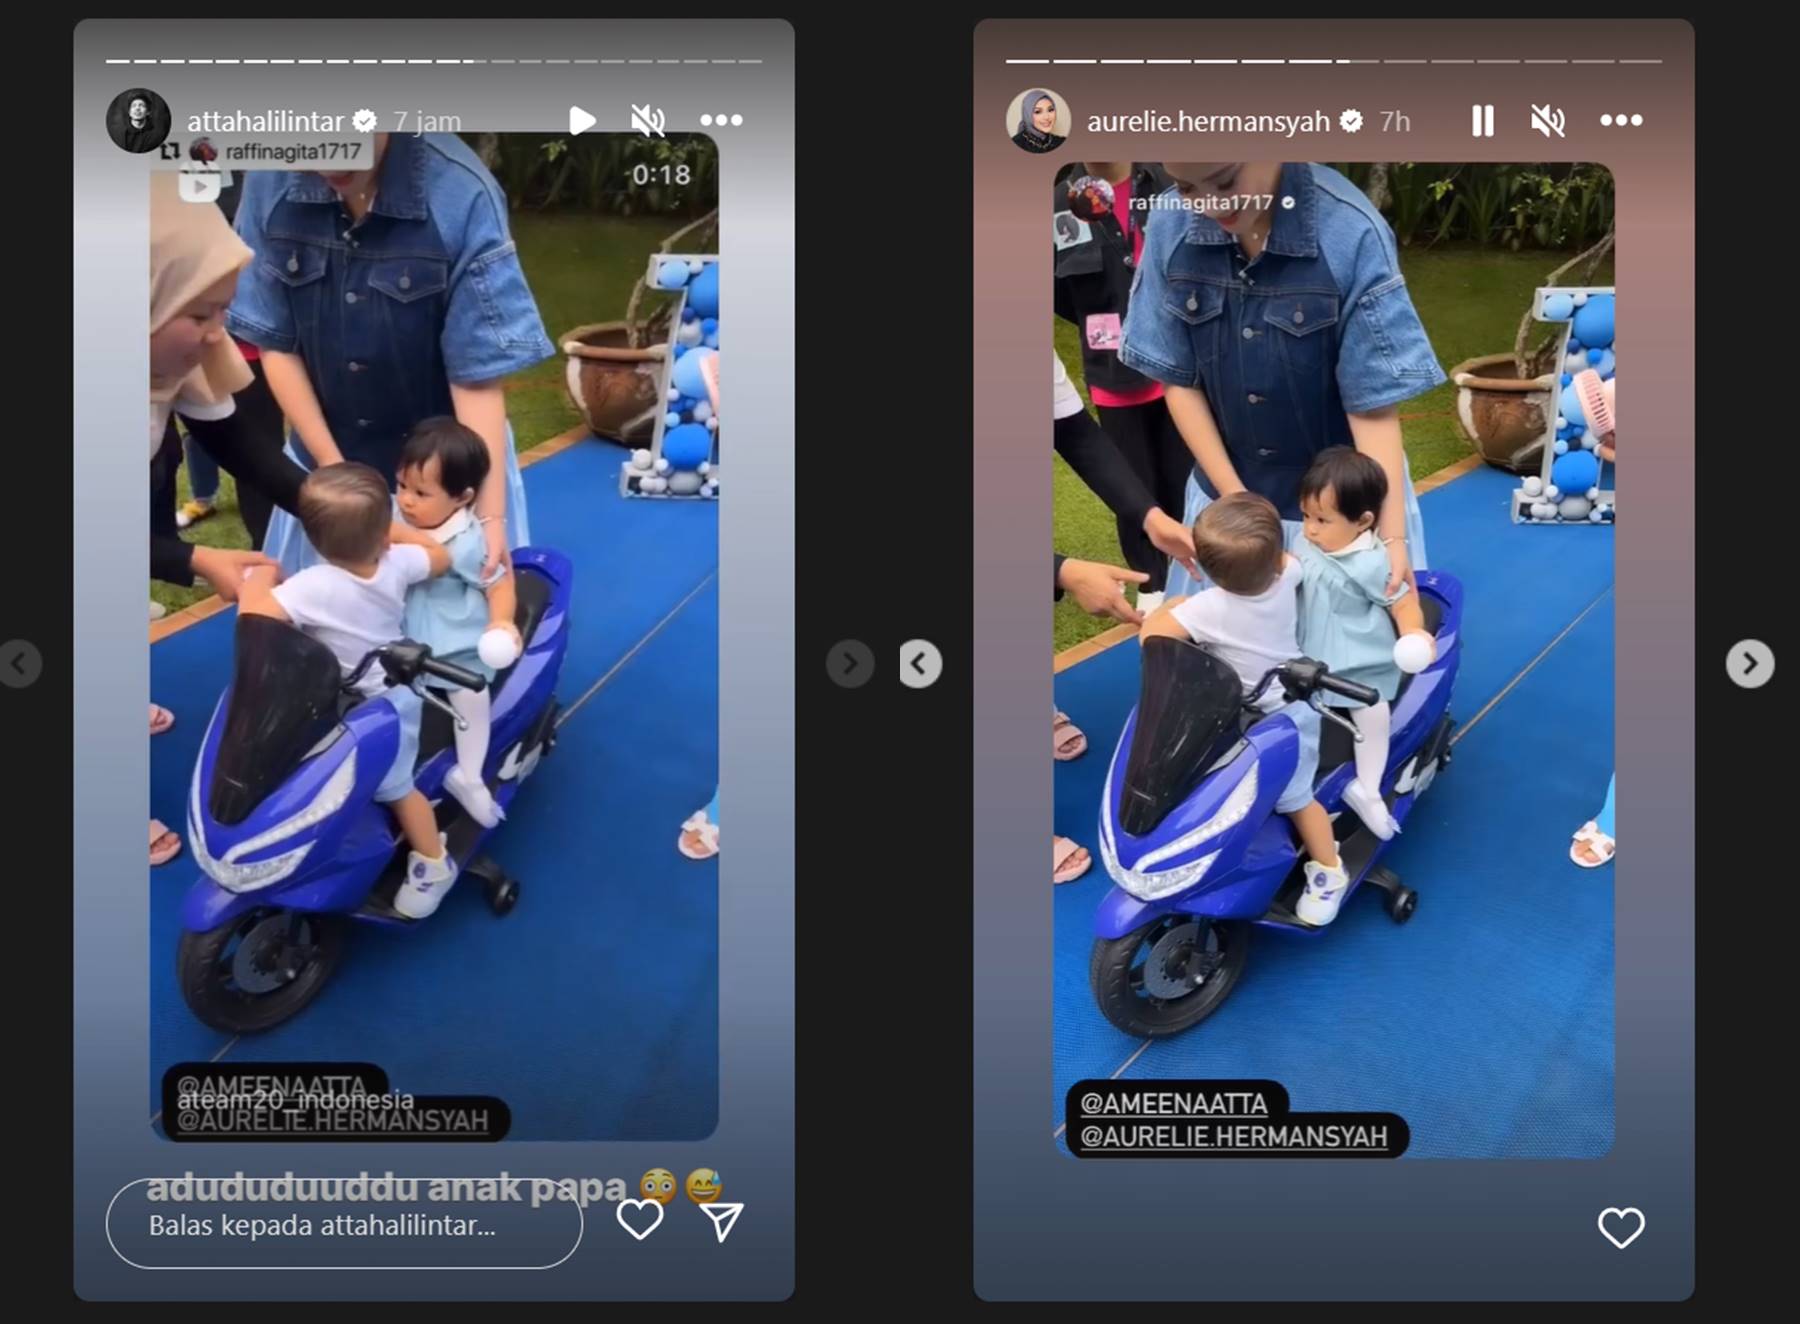 Atta Halilintar dan Aurel Hermansyah membagikan ulang momen Rayyanza dan Ameena di Instagram masing-masing